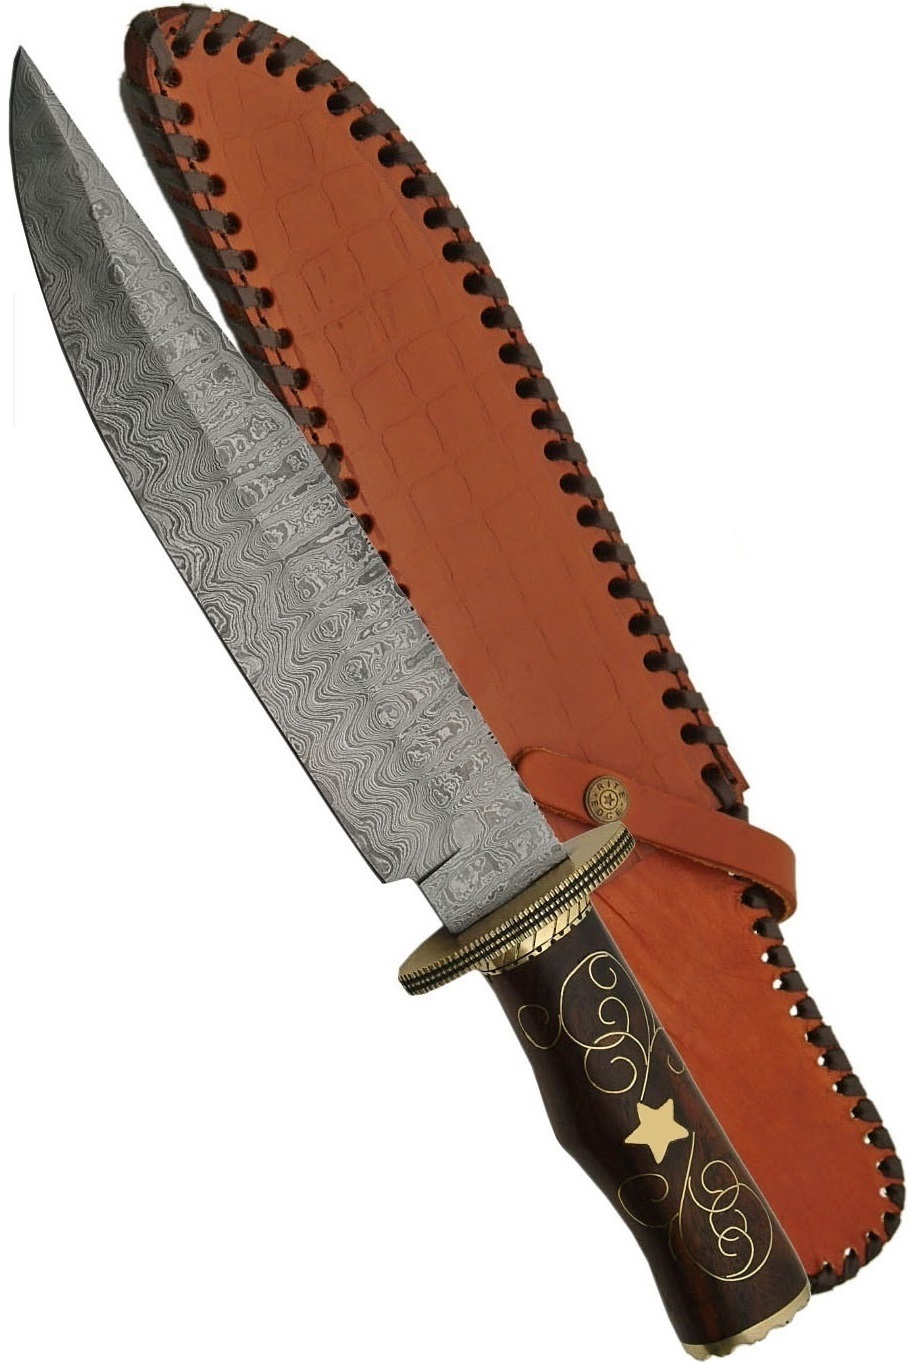 Grand poignard 40cm lame DAMAS - Couteau bois et laiton - Copie